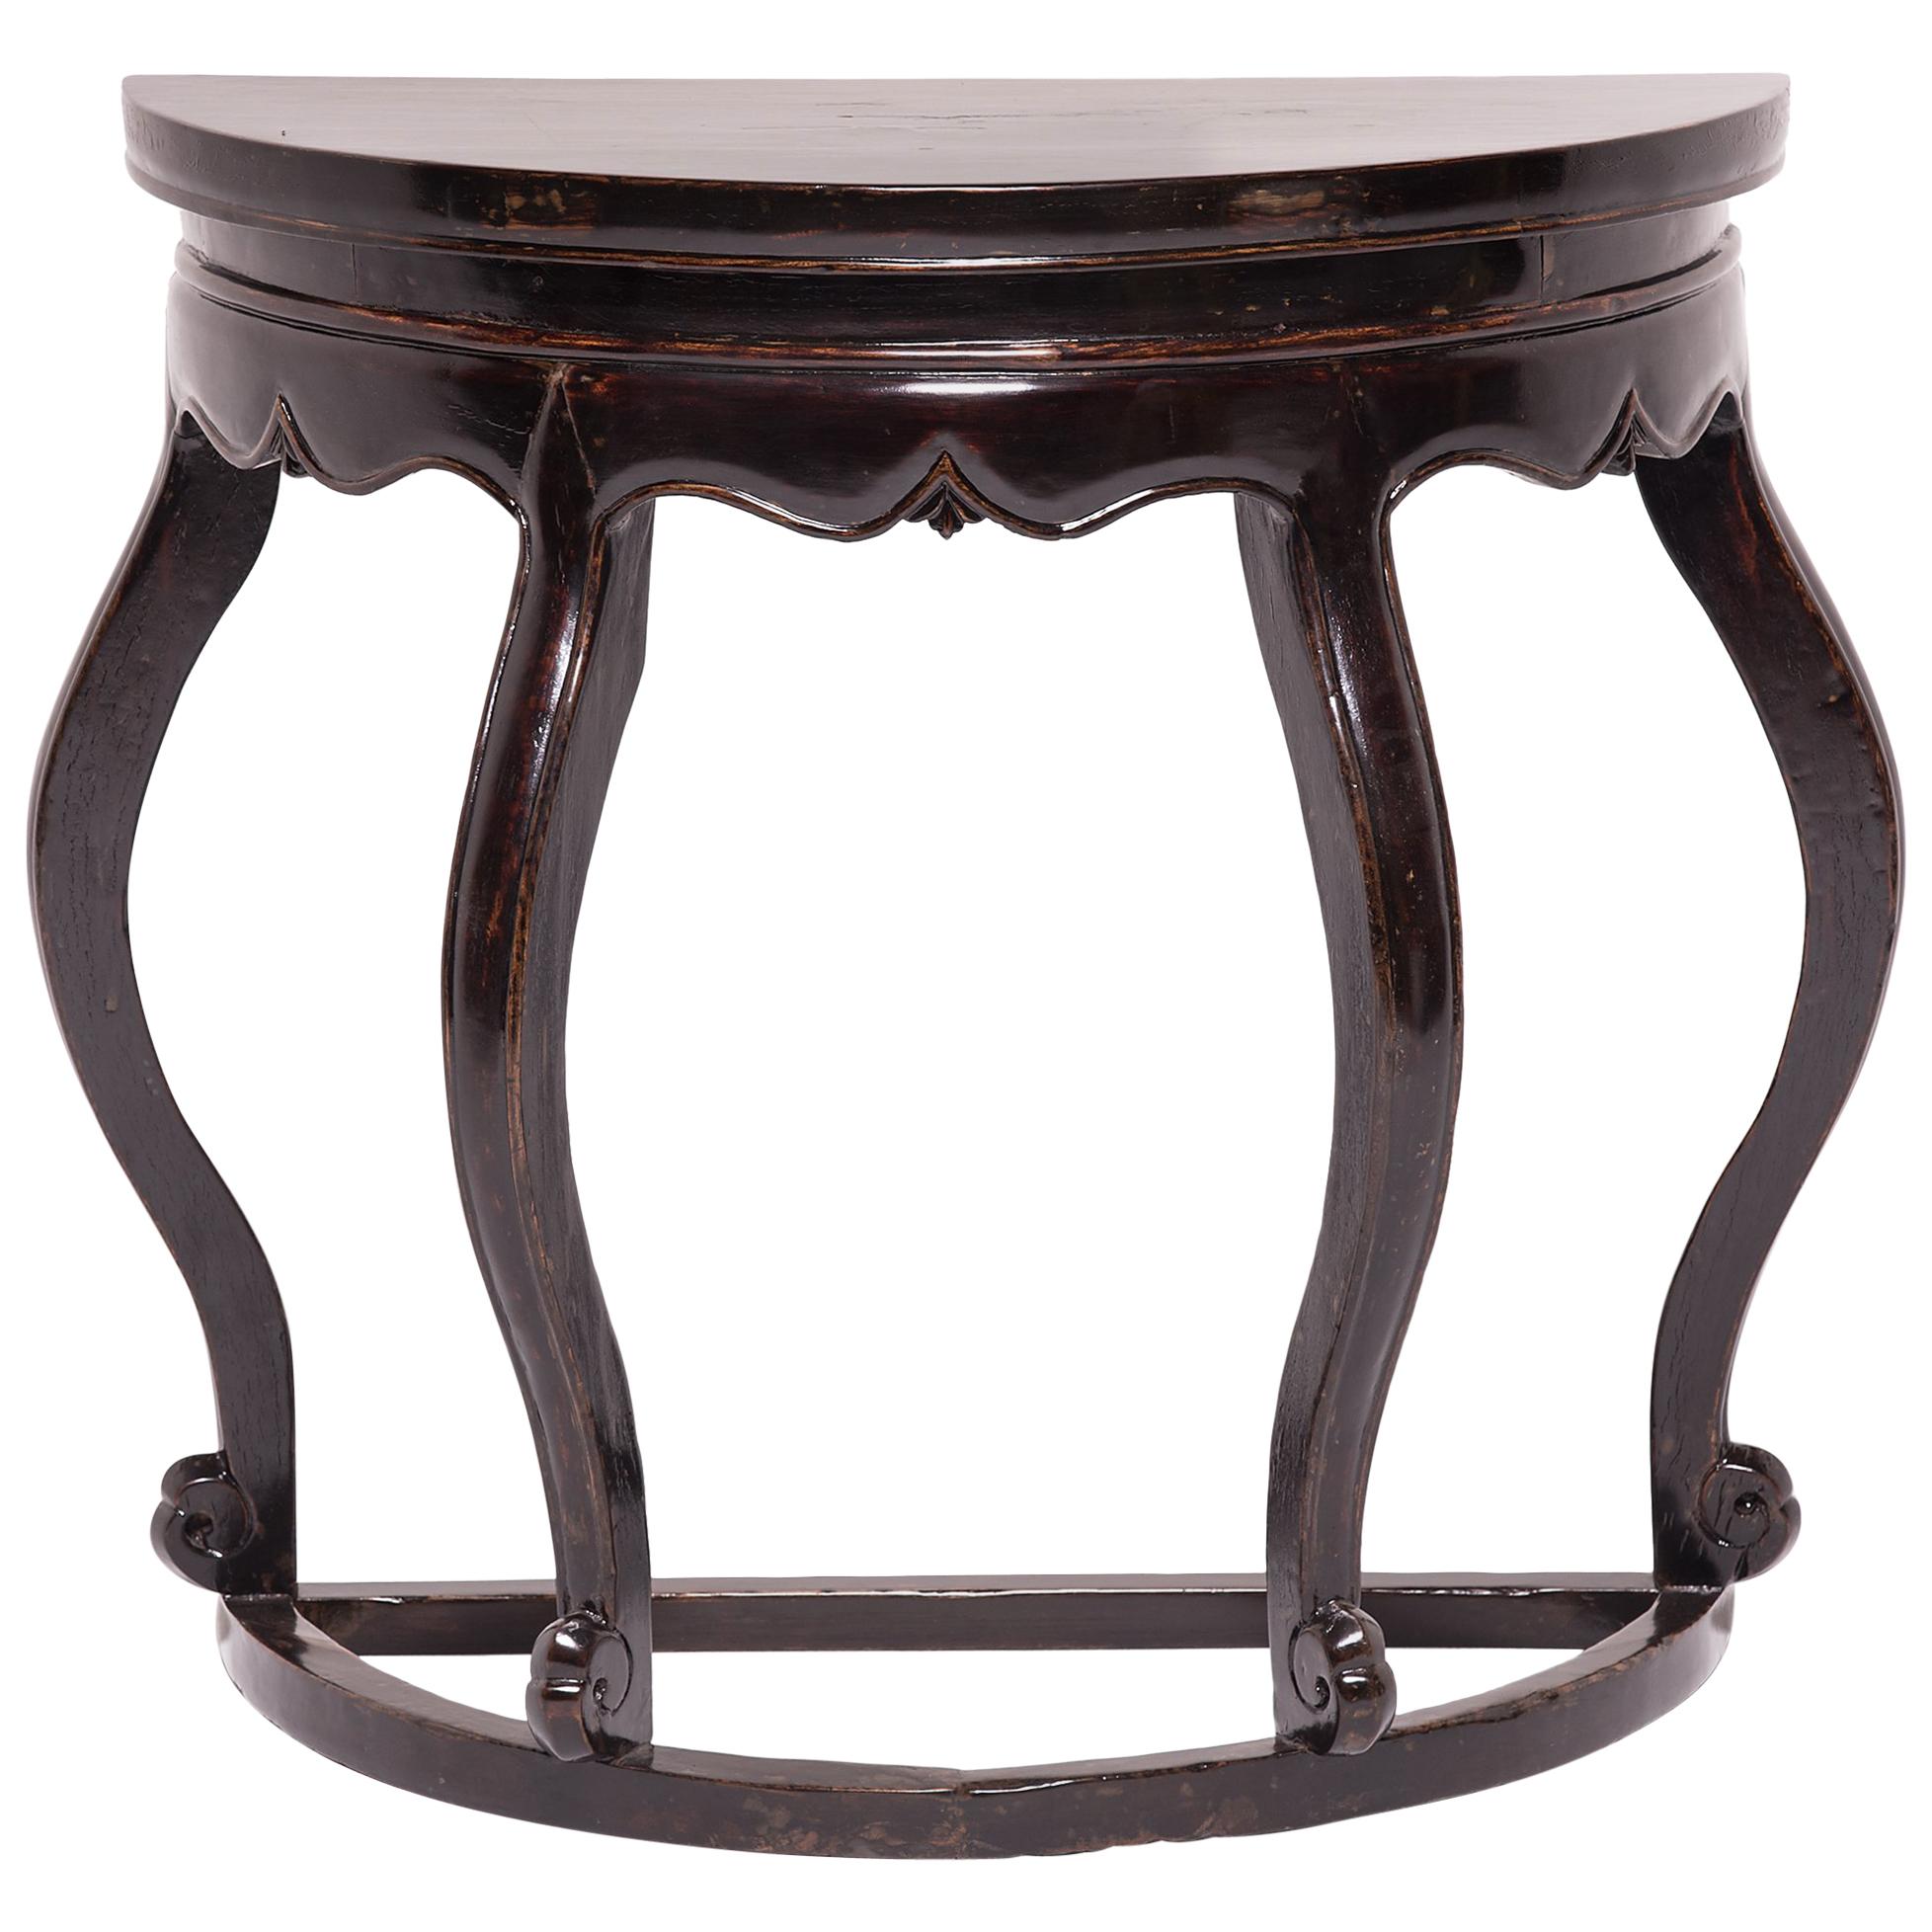 Black Lacquer Bulbous Demilune Table, c. 1850